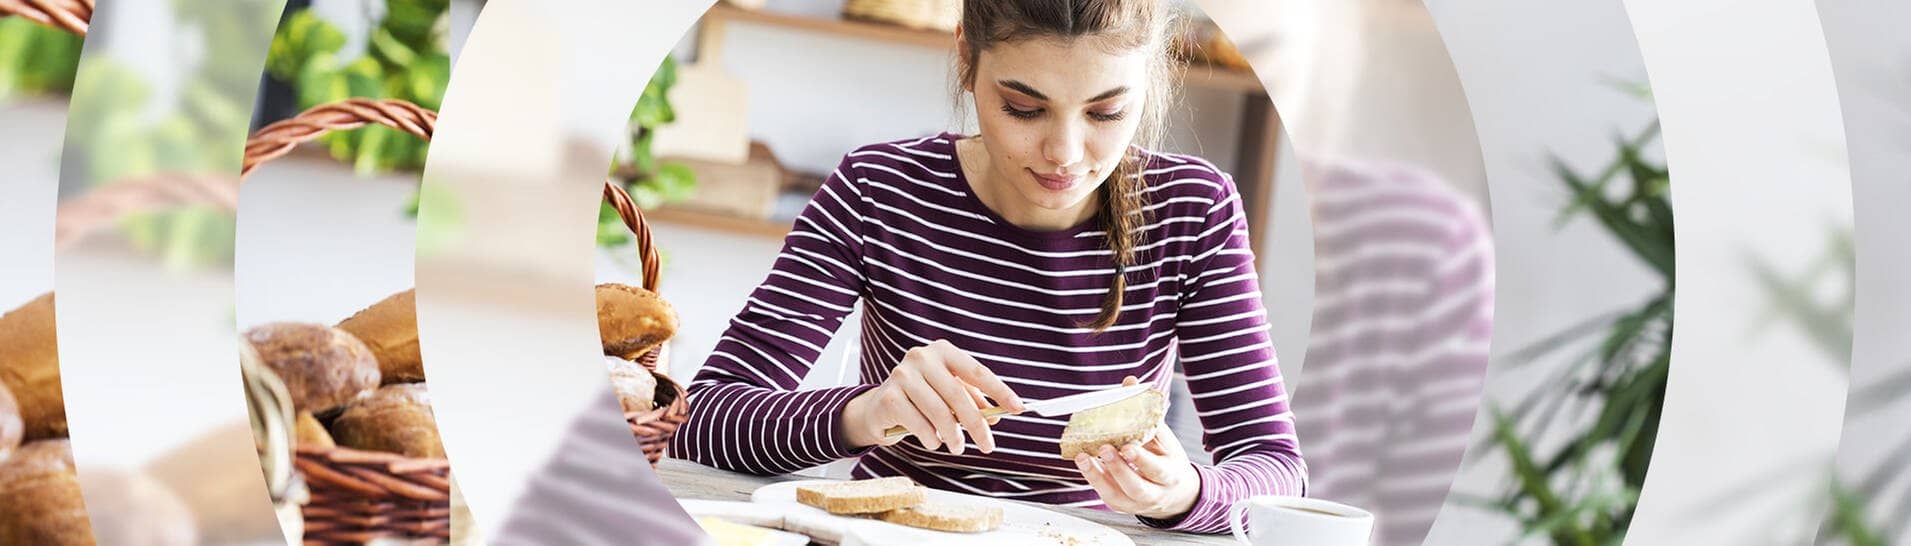 Junge Frau sitzt in der Küche am Frühstückstisch und schmiert sich ein Brot mit Butter